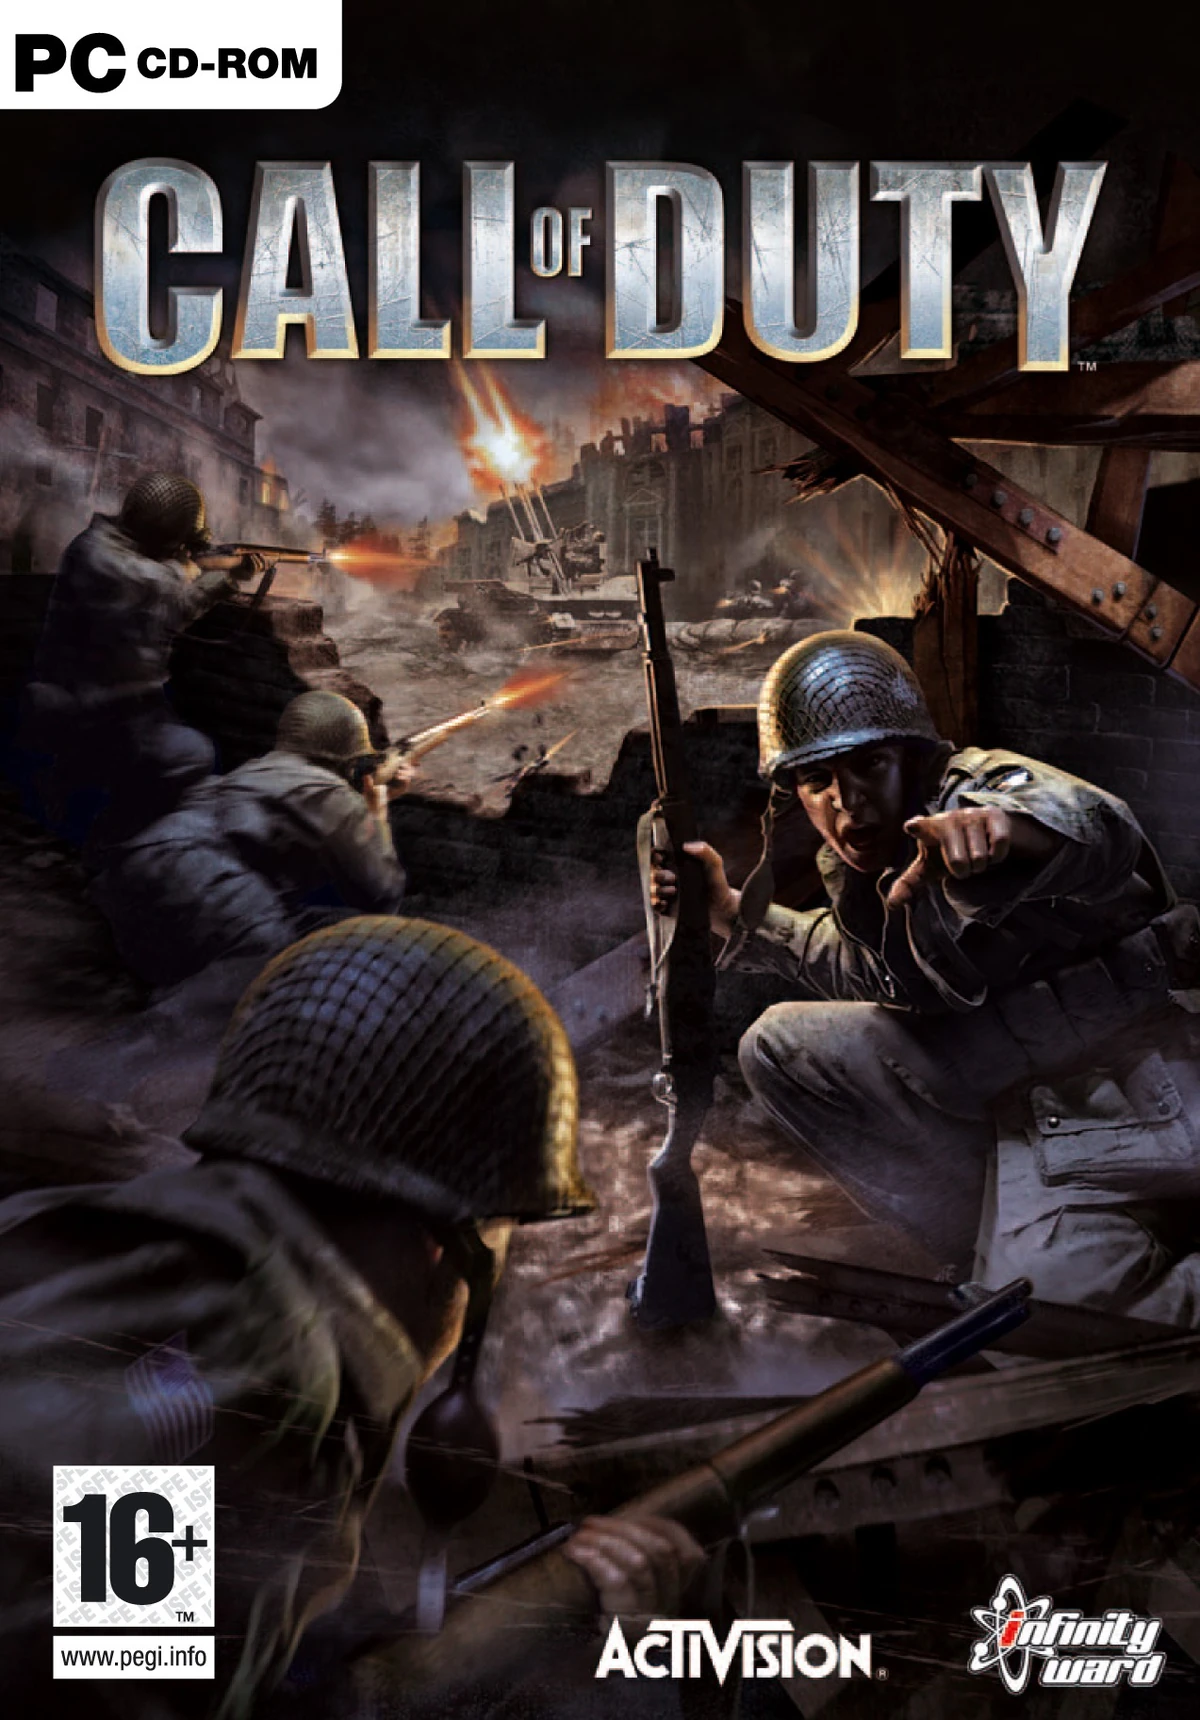 Qual é o Call of Duty original?